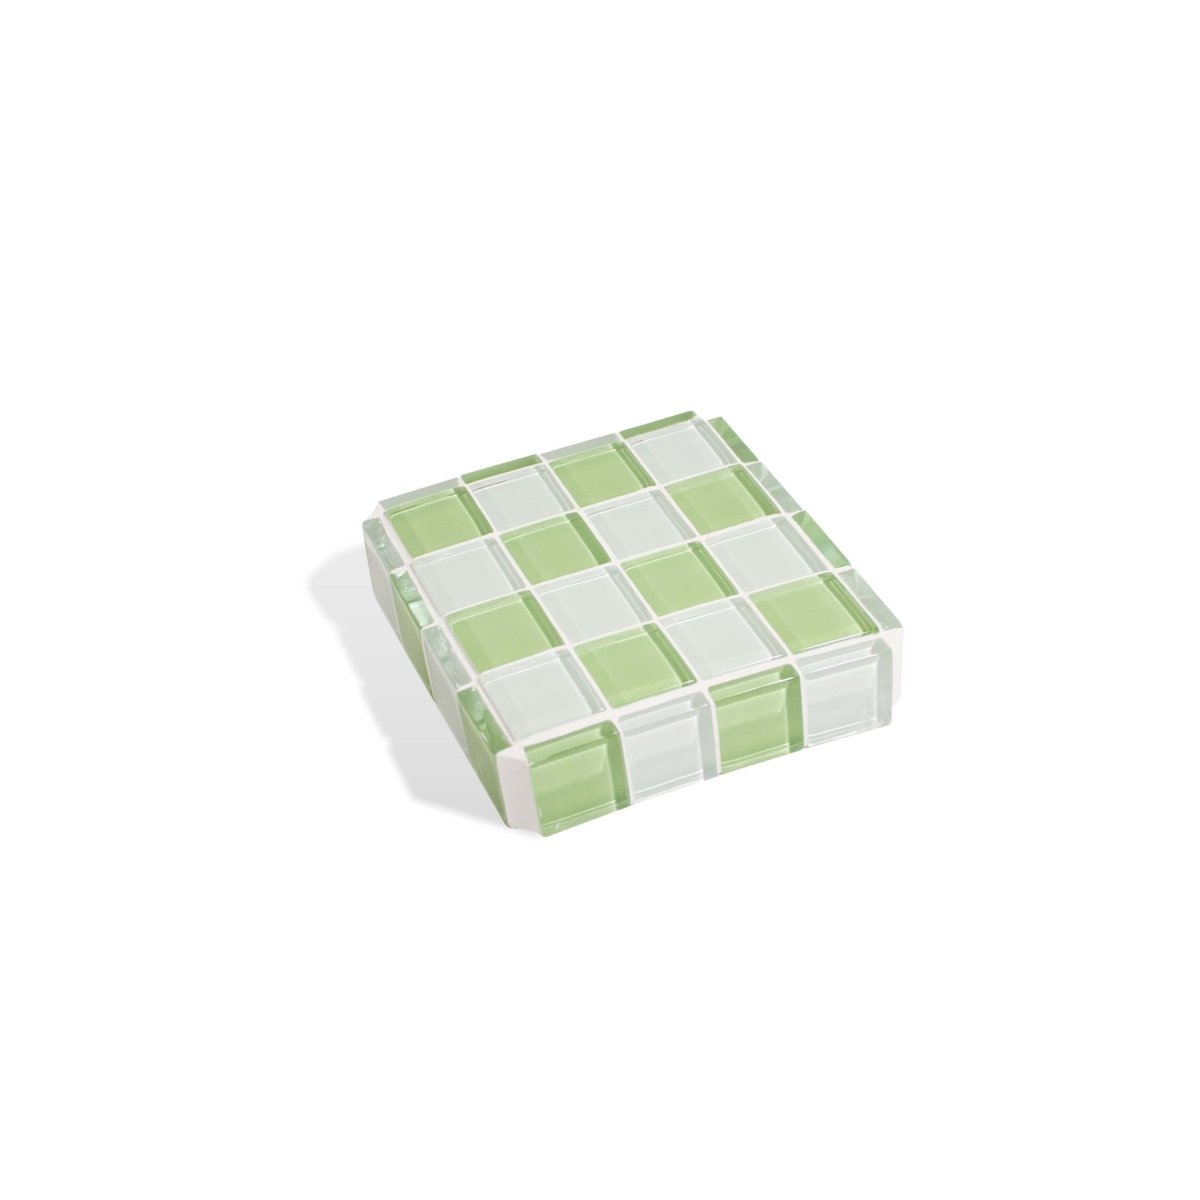 Subtle Art Studios Glass Tile Cube - Pistachio Milk Chocolate - lily & onyx